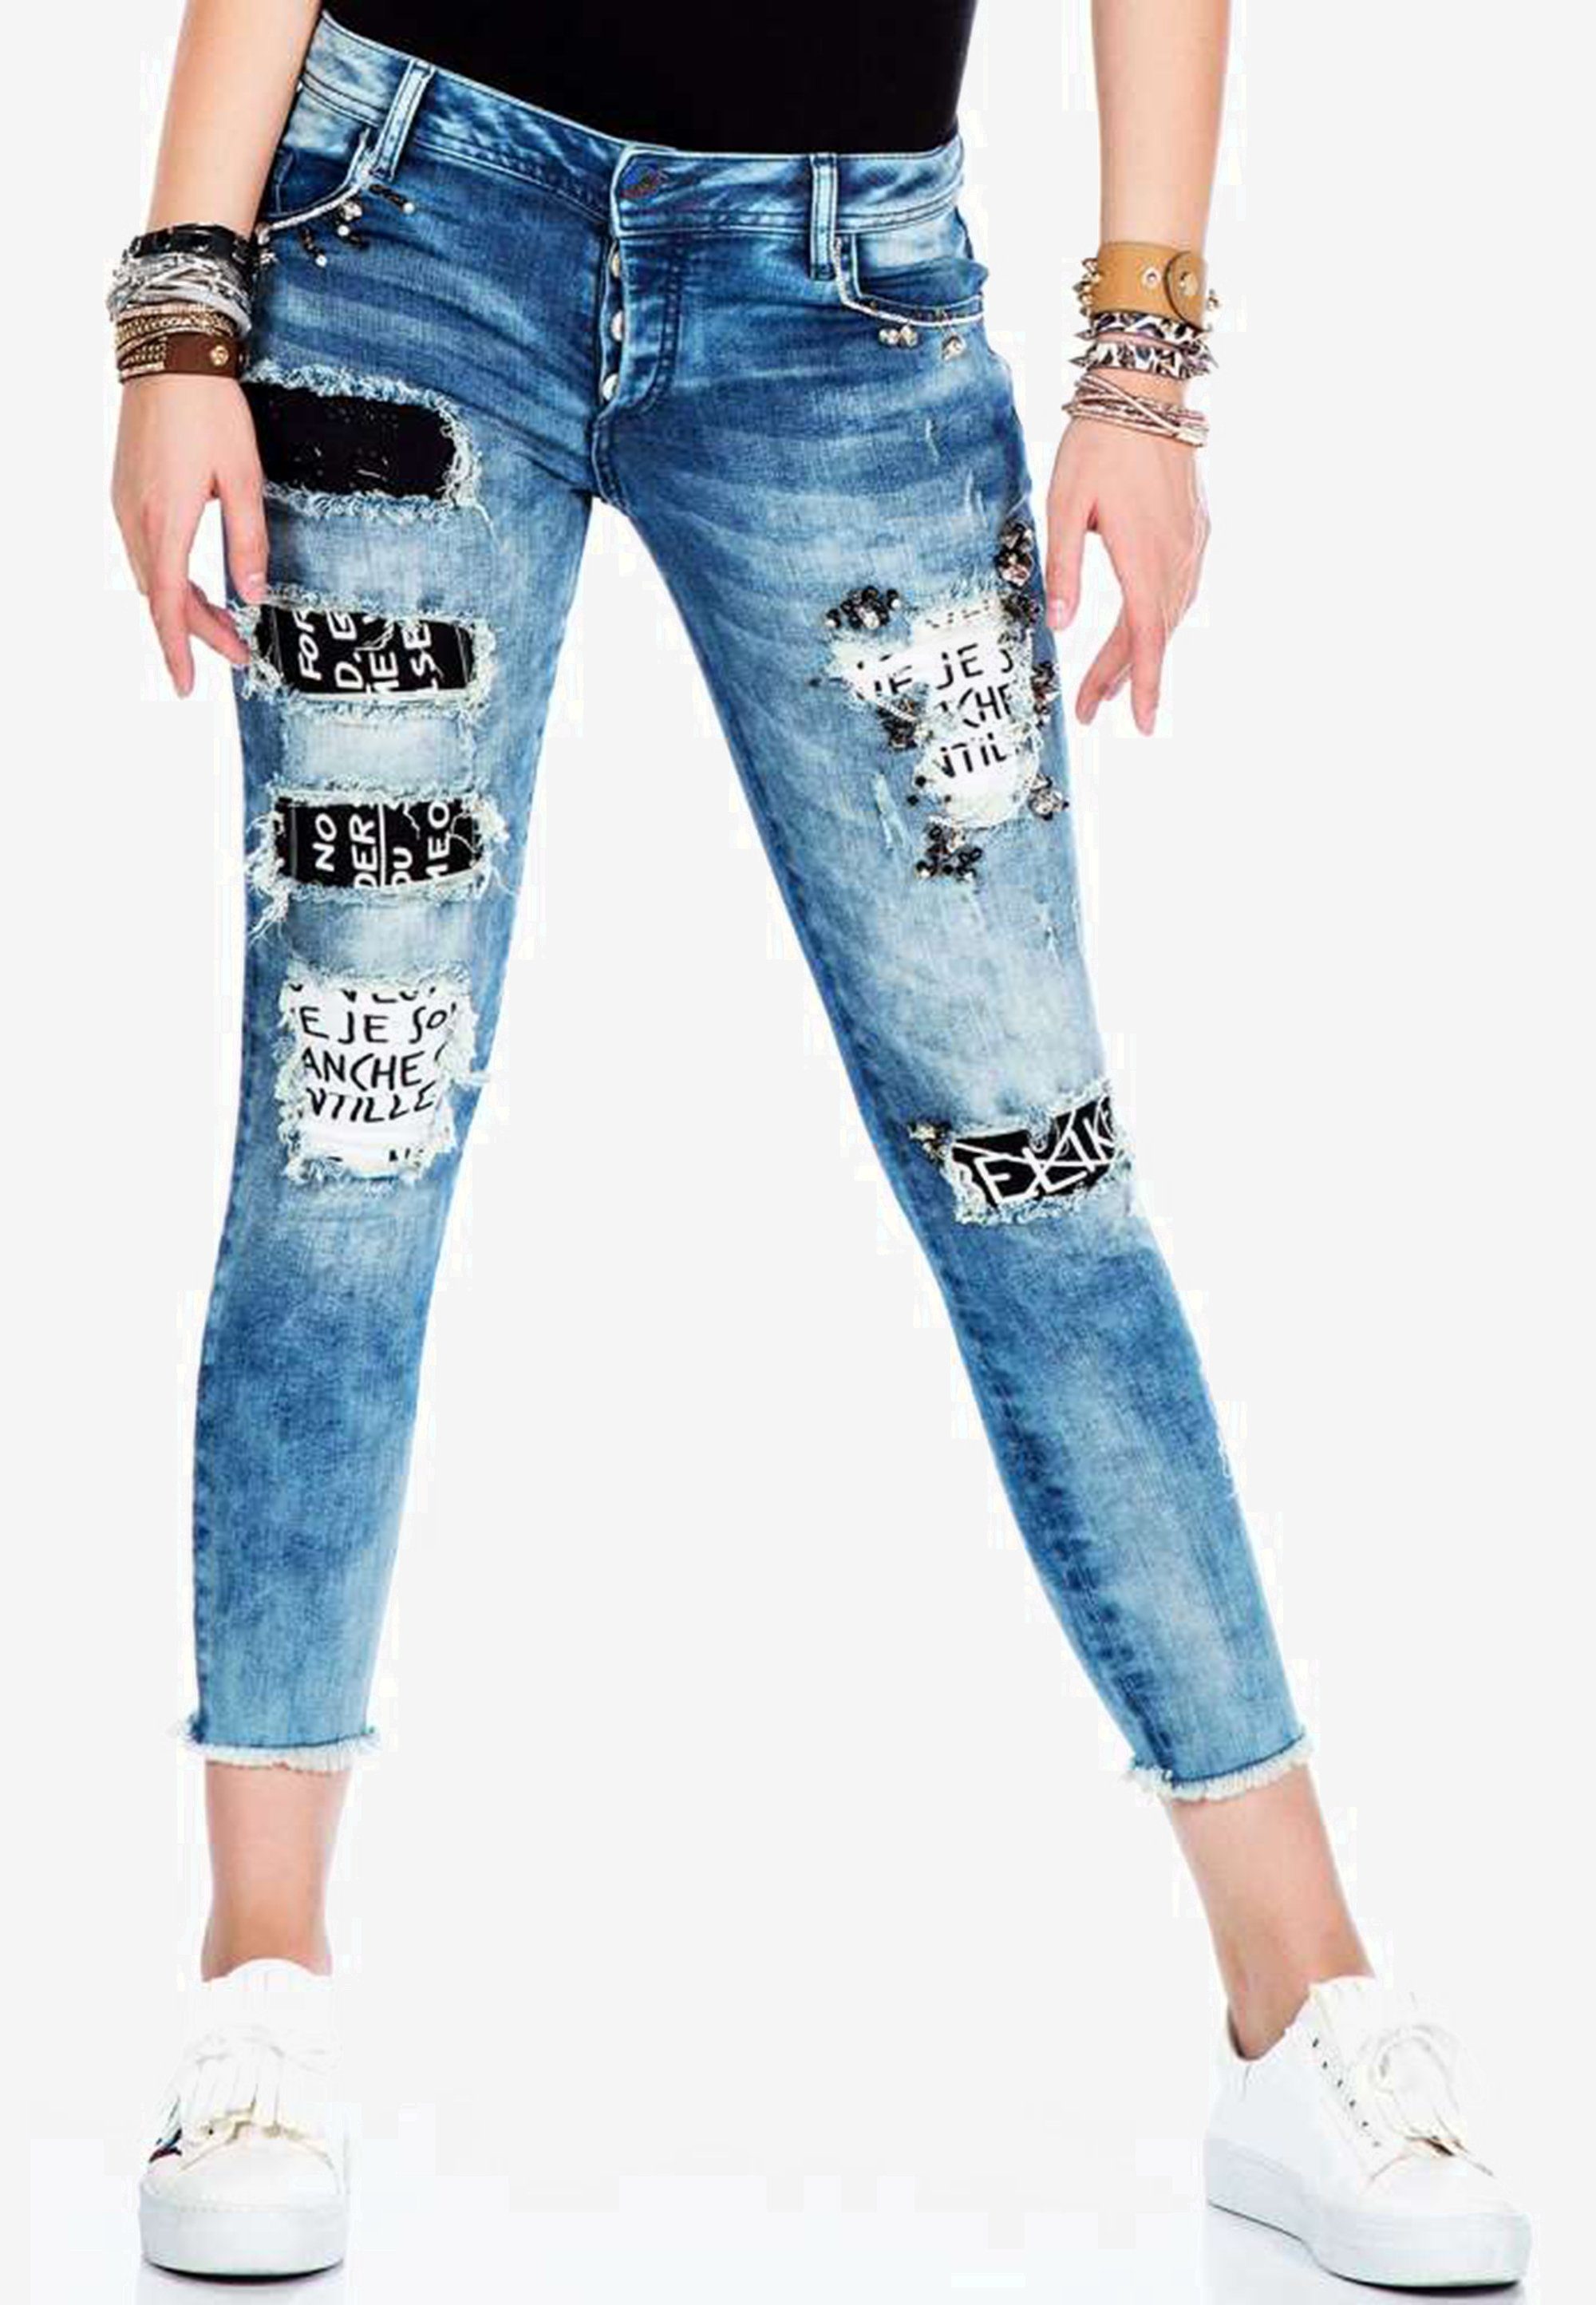 Cipo & Baxx Damen Jeans online kaufen | OTTO